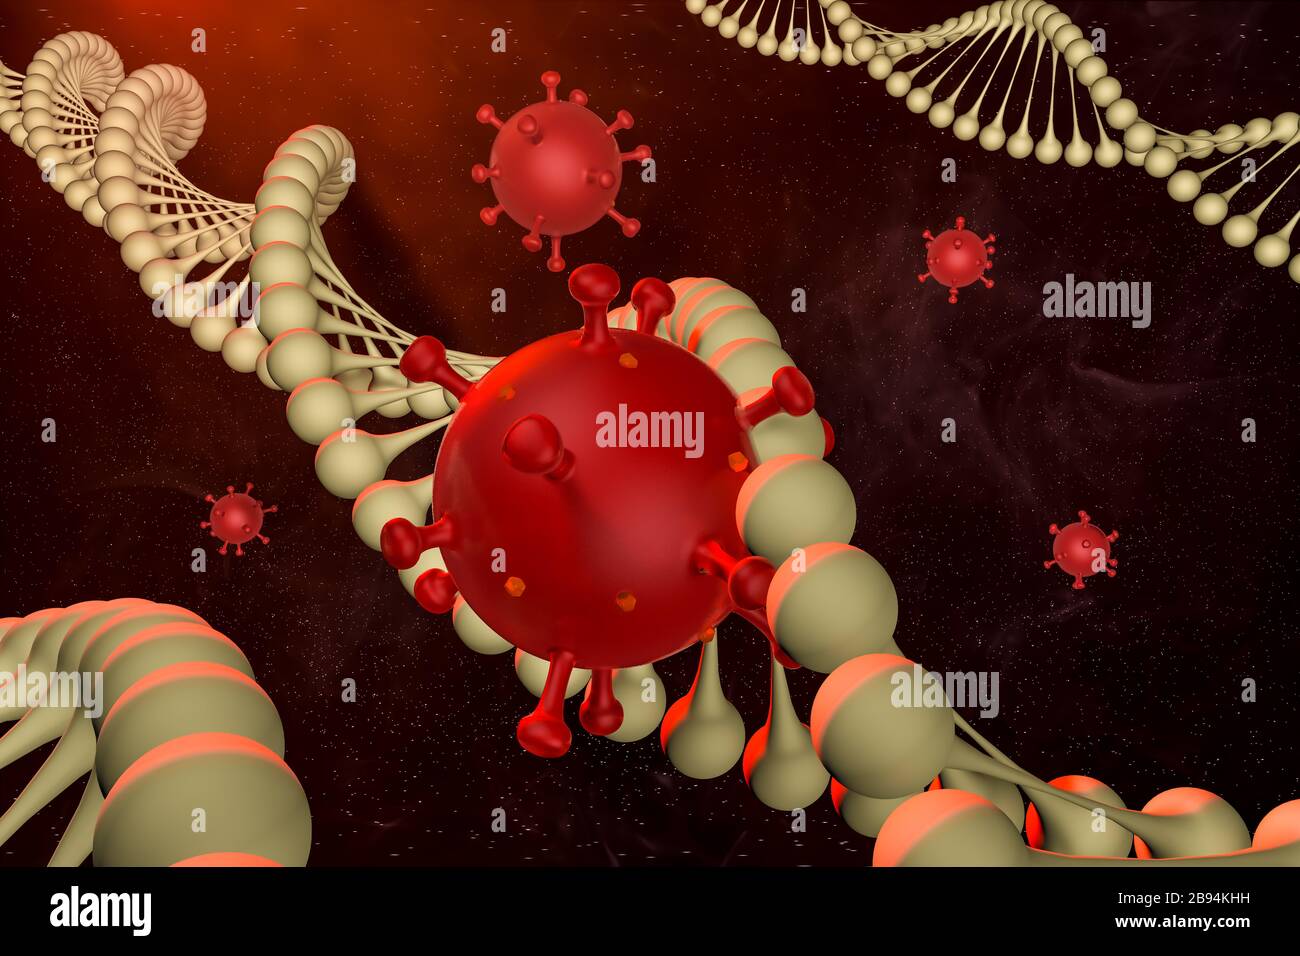 Illustration médicale abstraite modélisée par ordinateur du coronavirus Novel 2019-nCoV covid-19 dans la chaîne d'ADN. Concept de protection contre la pandémie de virus. Microbiologie Banque D'Images